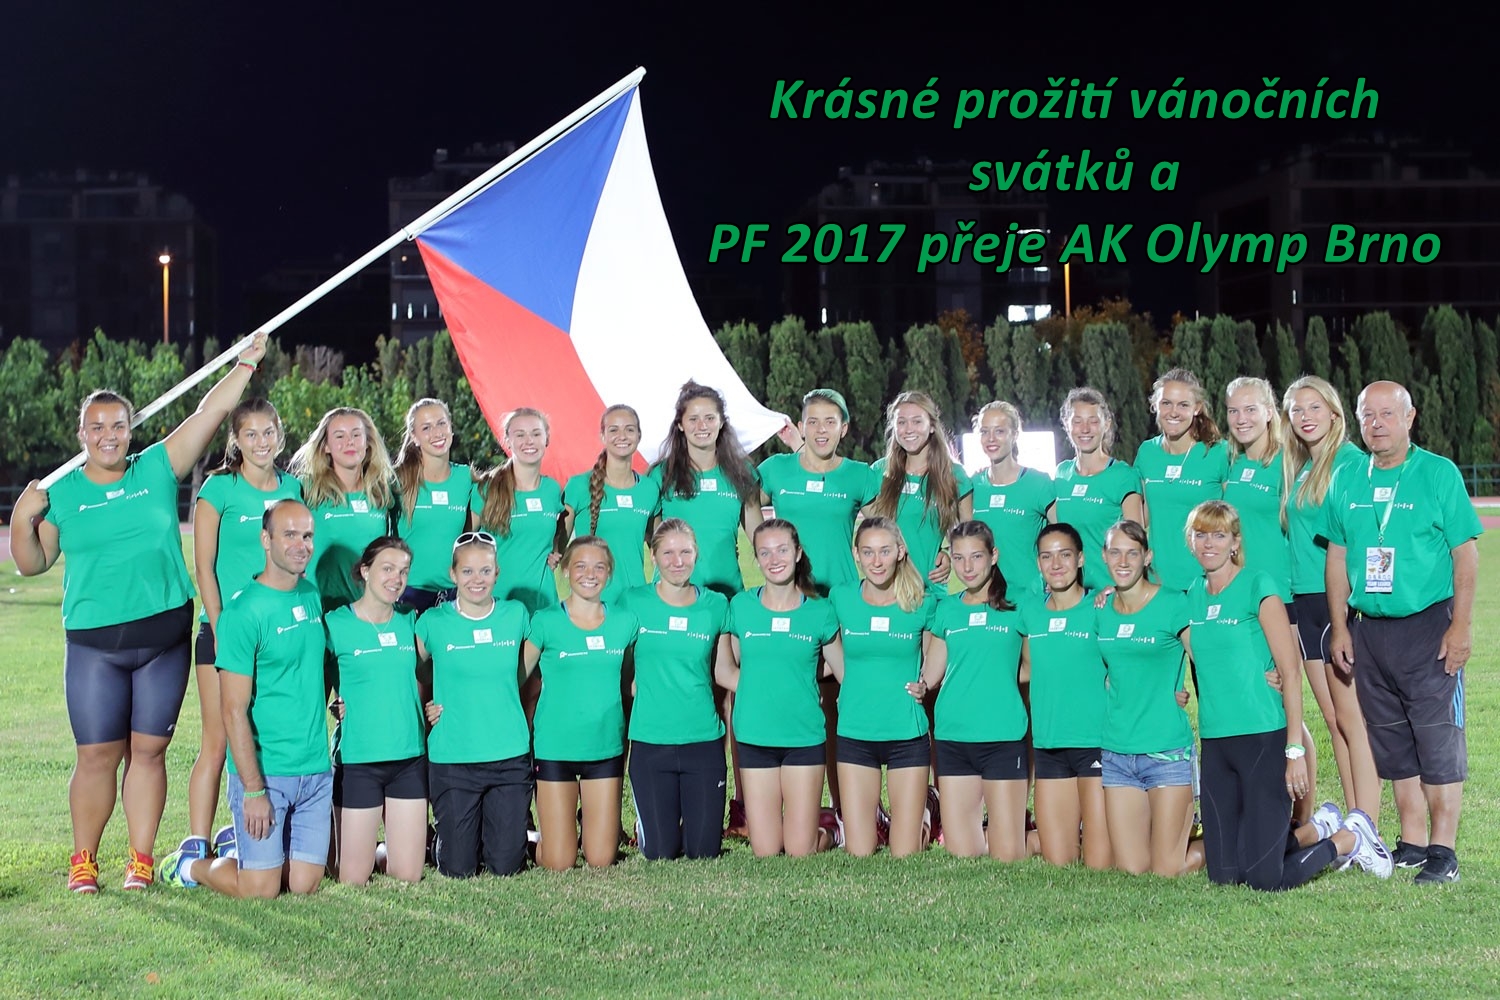 pf-2017-ak-olymp-brno-verze-2